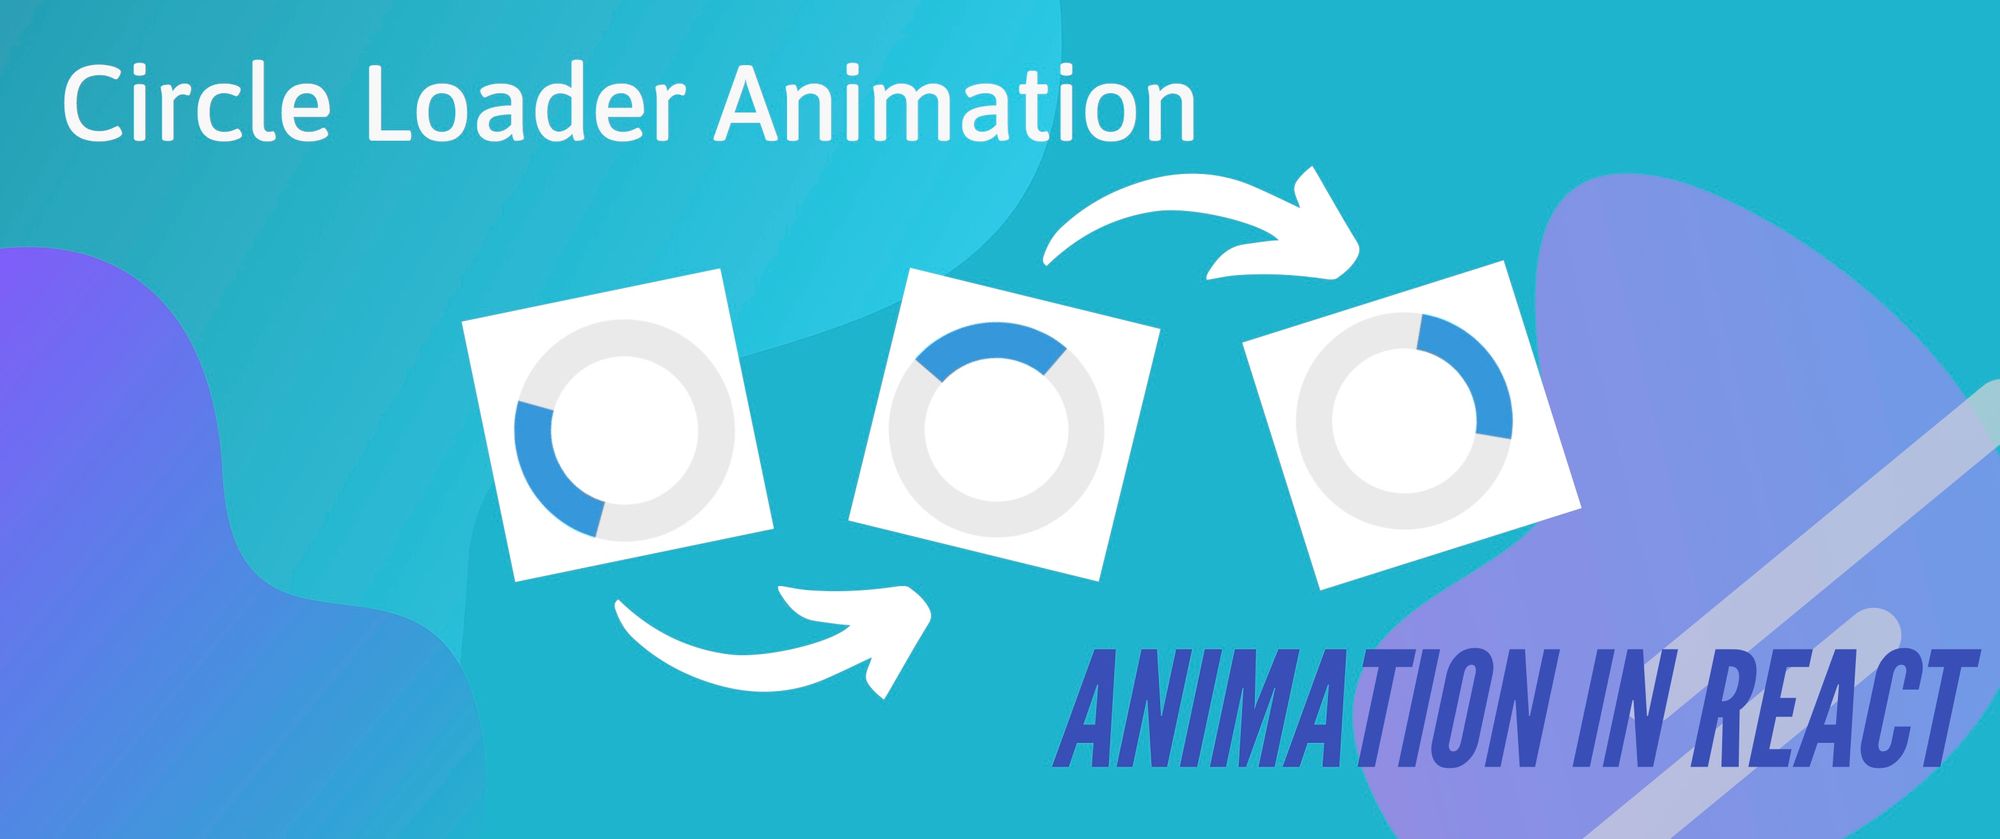 circle loader animation, three frames of circle loading animation